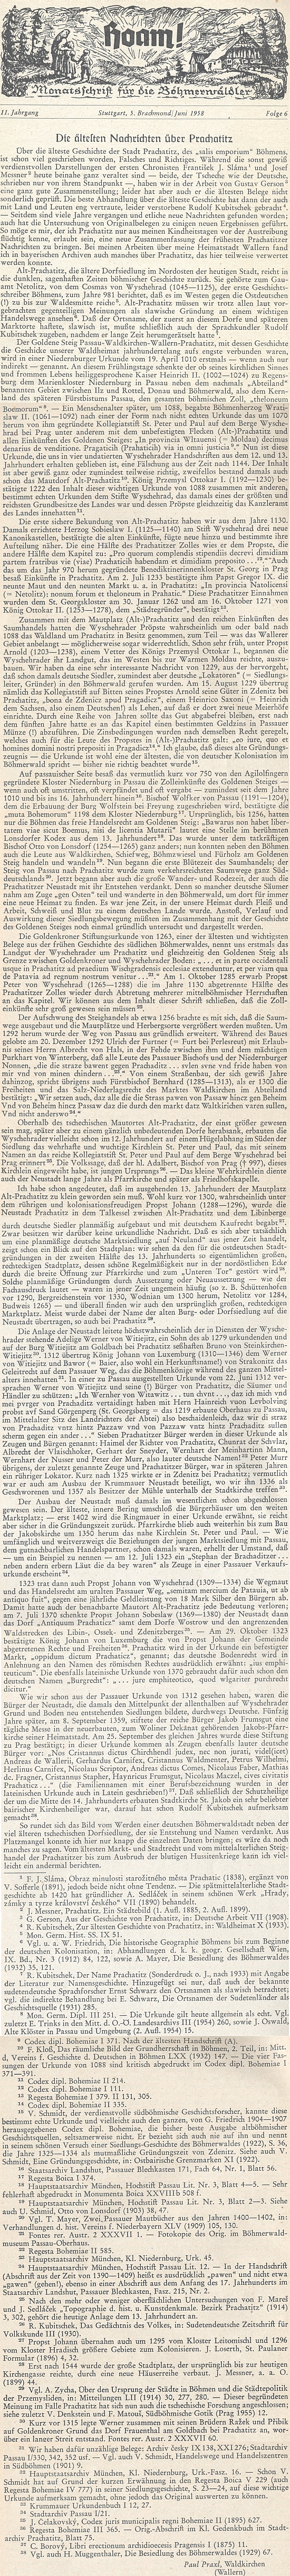 Jeho zásadní text o nejstarších zprávách, týkajících se Prachatic, na stránkách krajanského časopisu